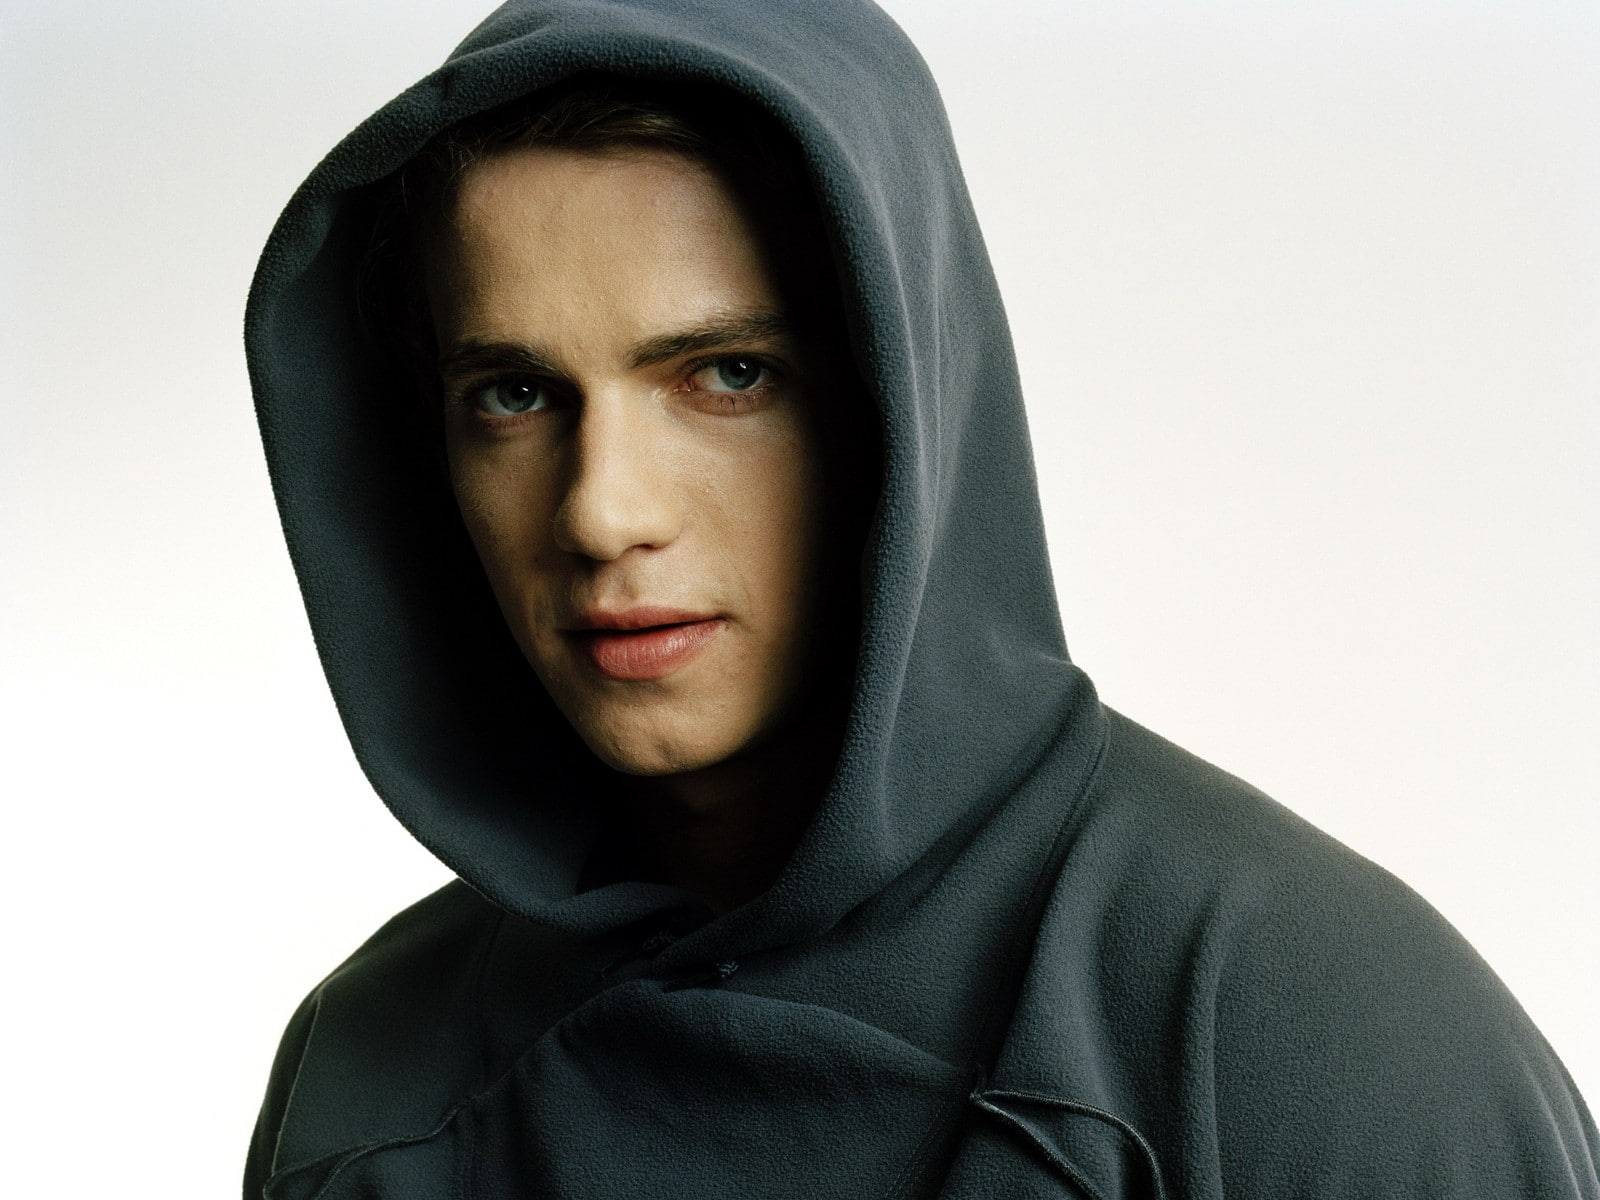 Hayden christensen, Actor, Face, Hood, Sweatshirt, portrait